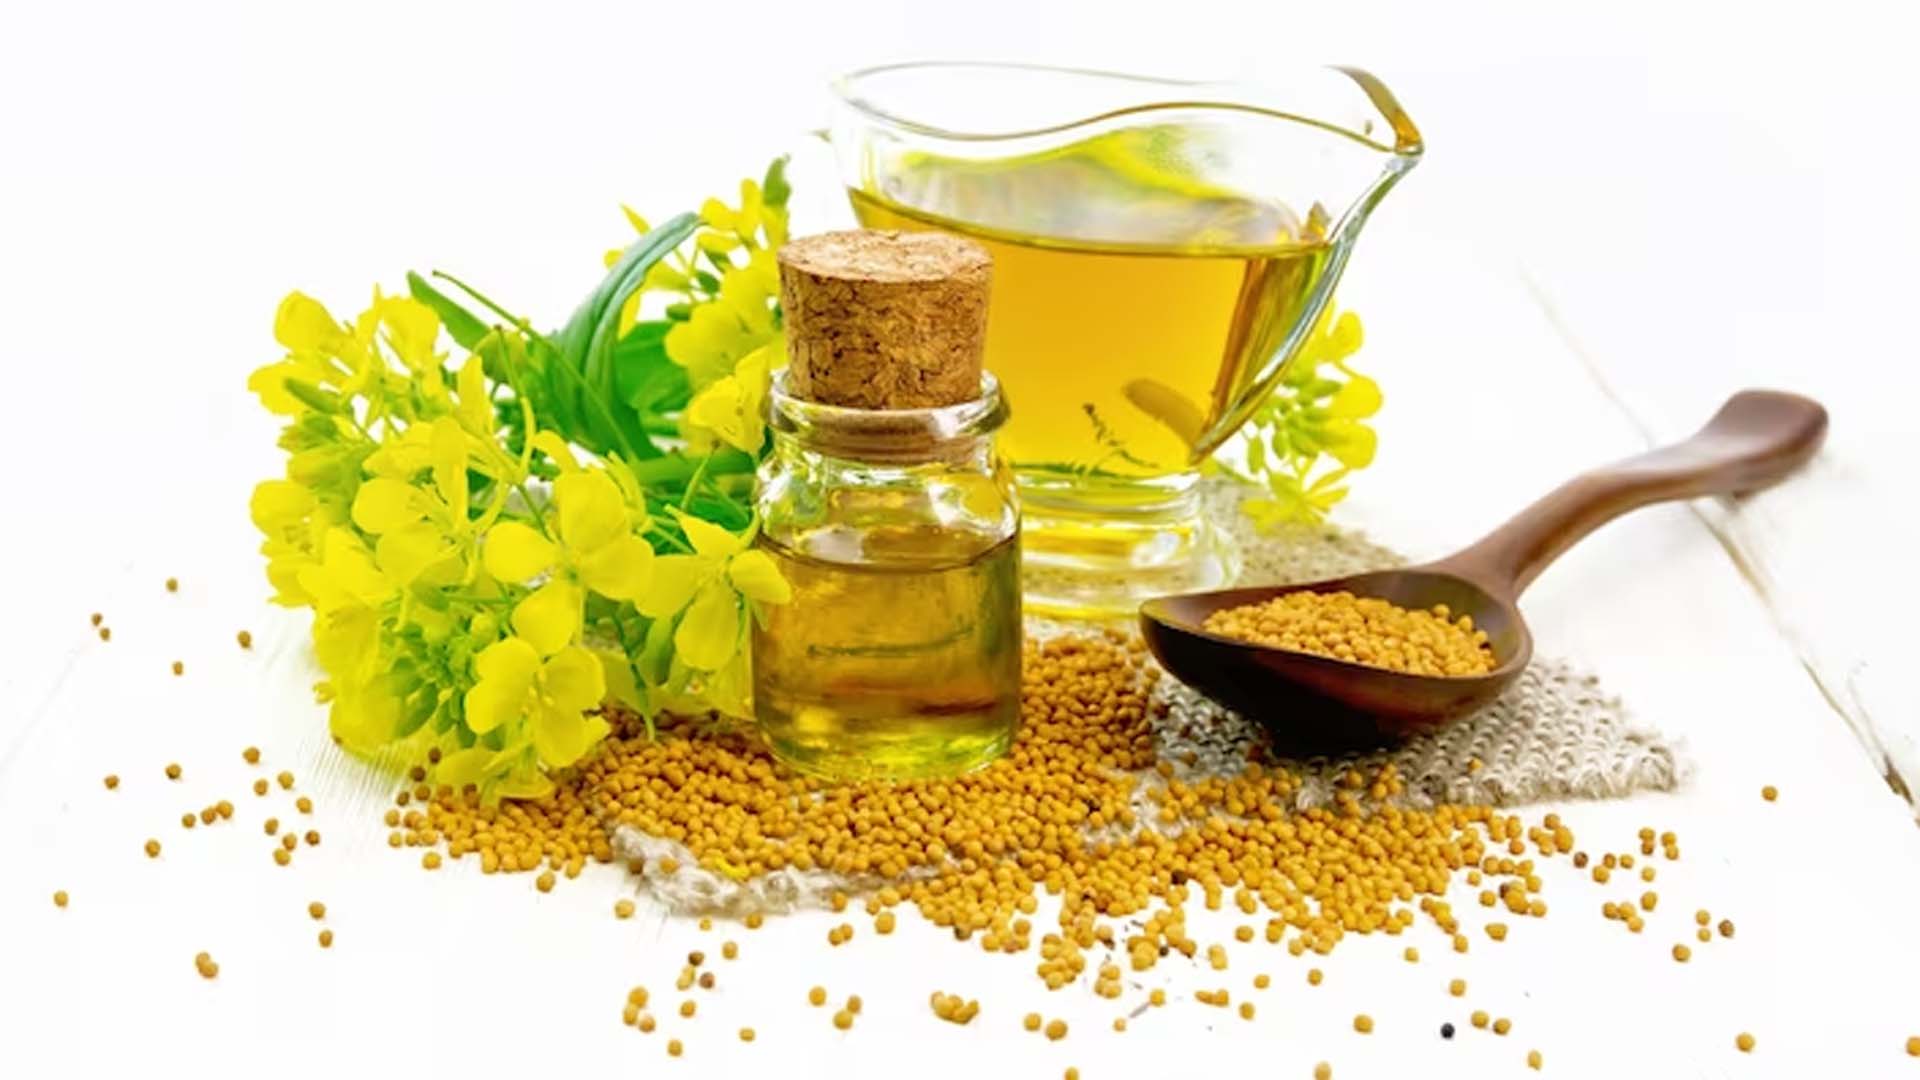 Nutritional Value of Mustard Oil